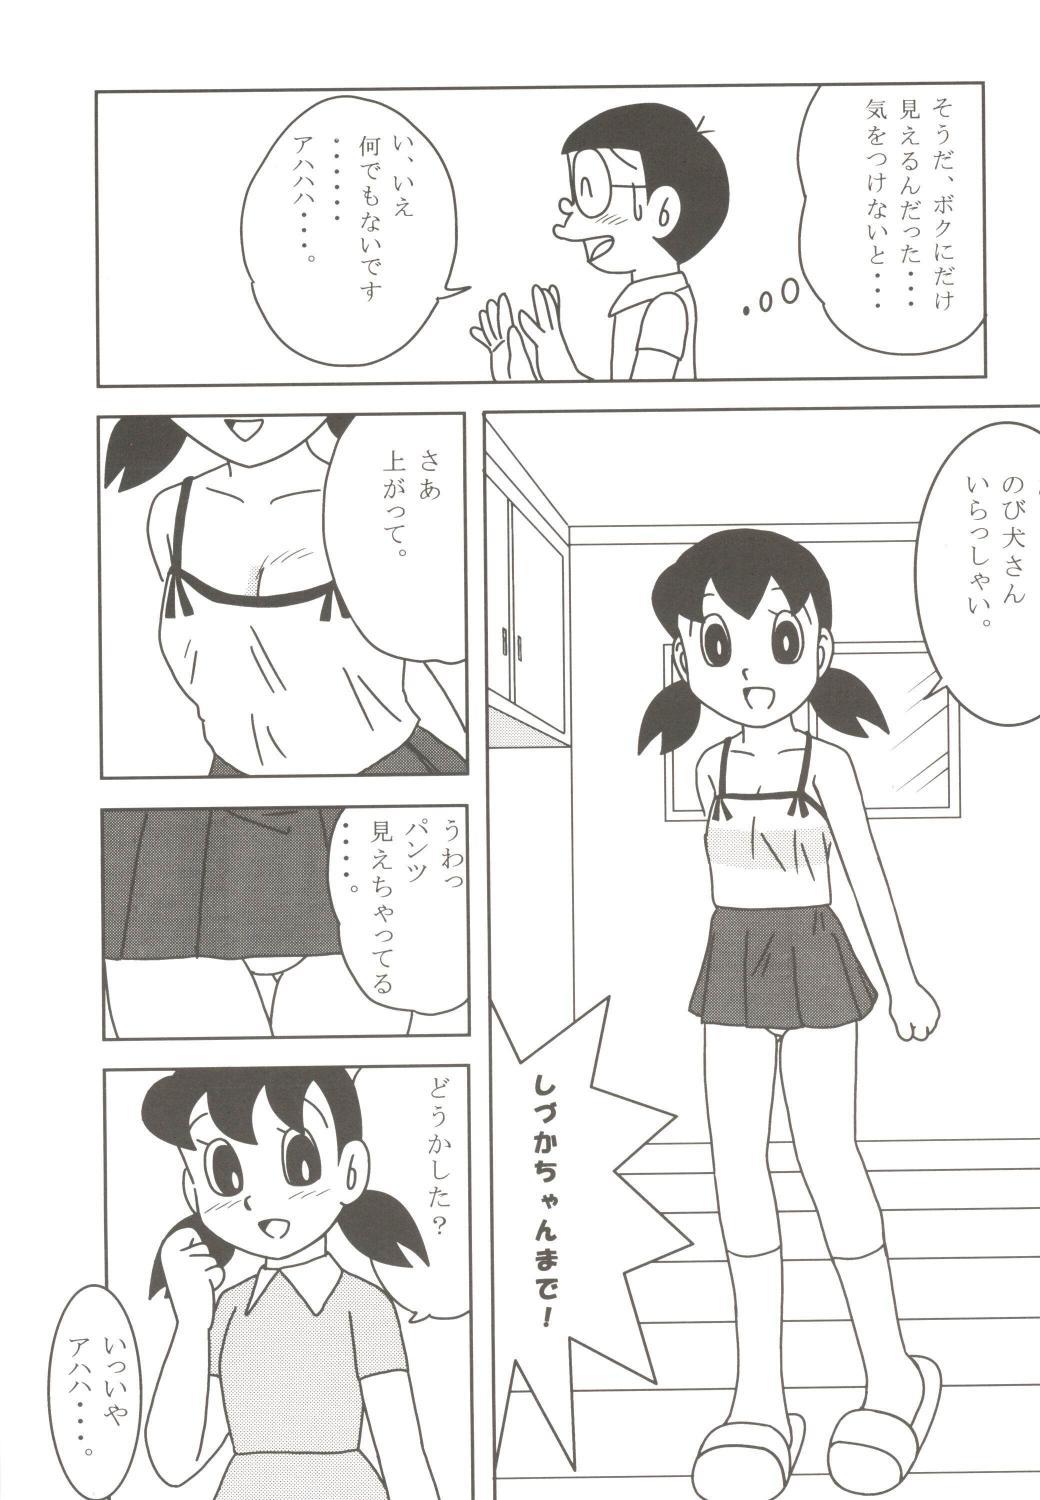 Squirt Anna Ko to Ii na, Yaretara Ii na. - Detective conan Doraemon Leaked - Page 9